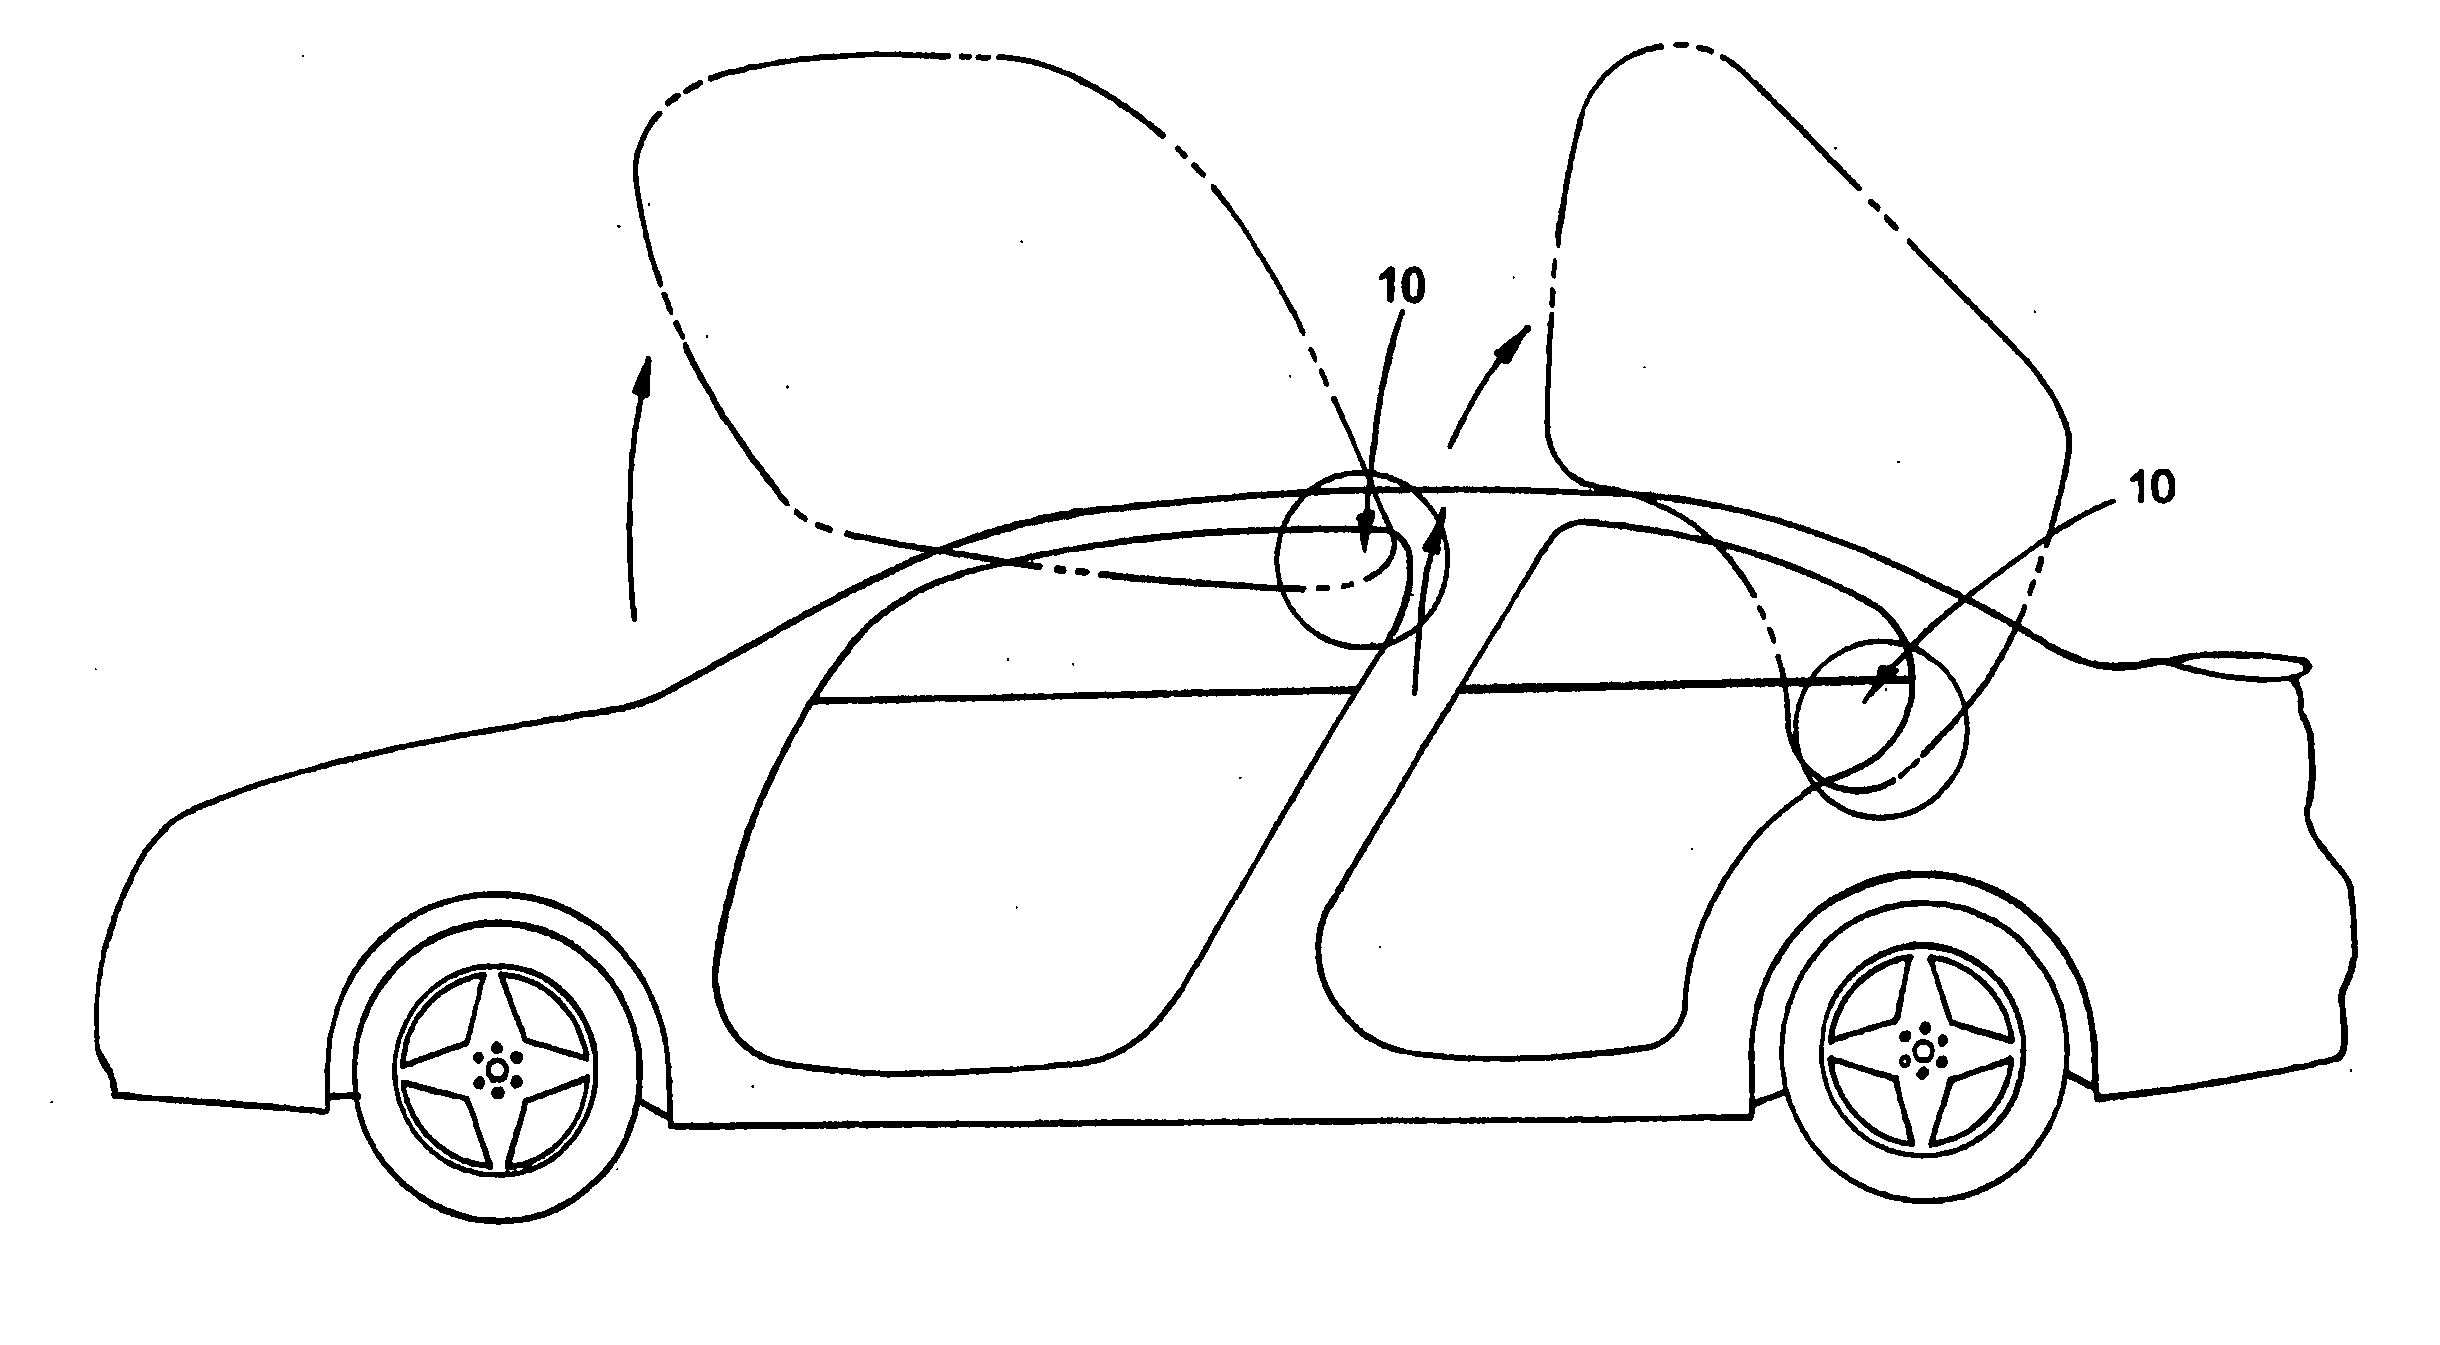 Scissor style pivoting vehicle door